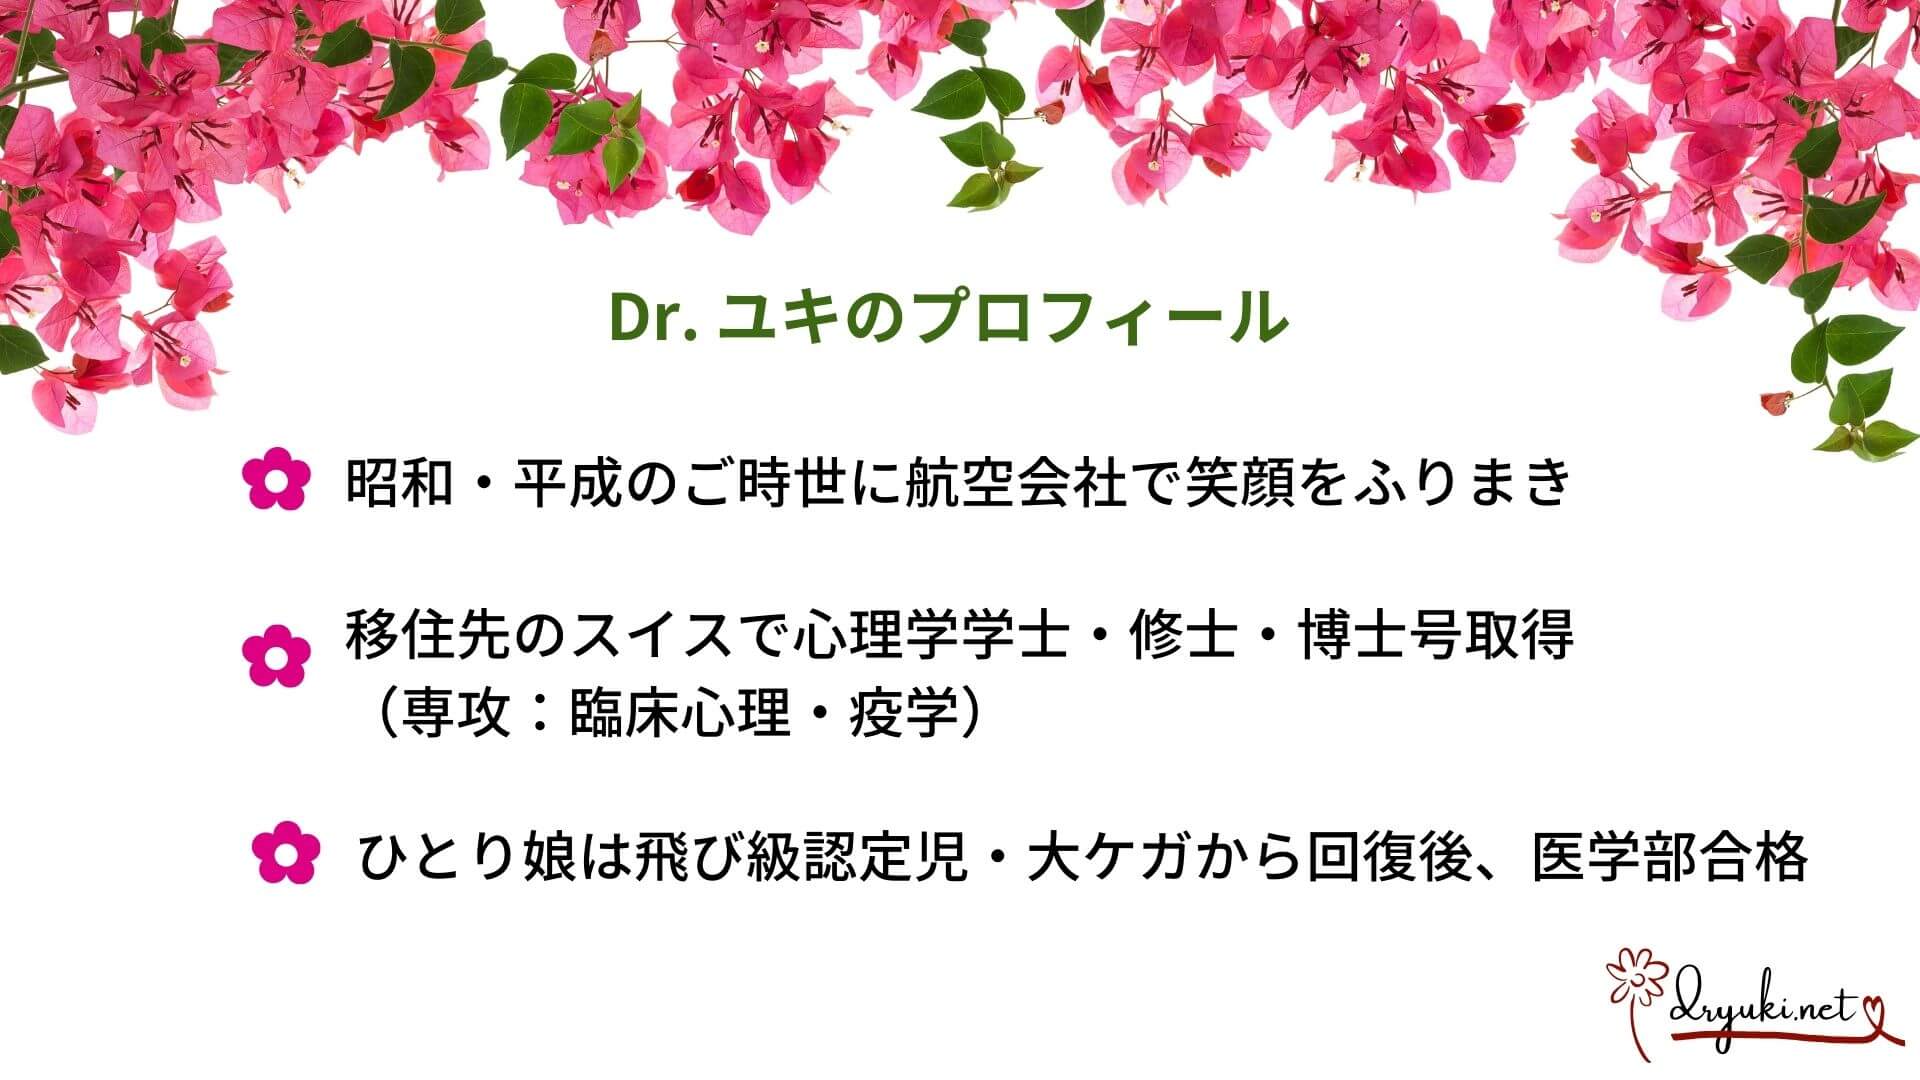 Dr.ユキのプロフィール